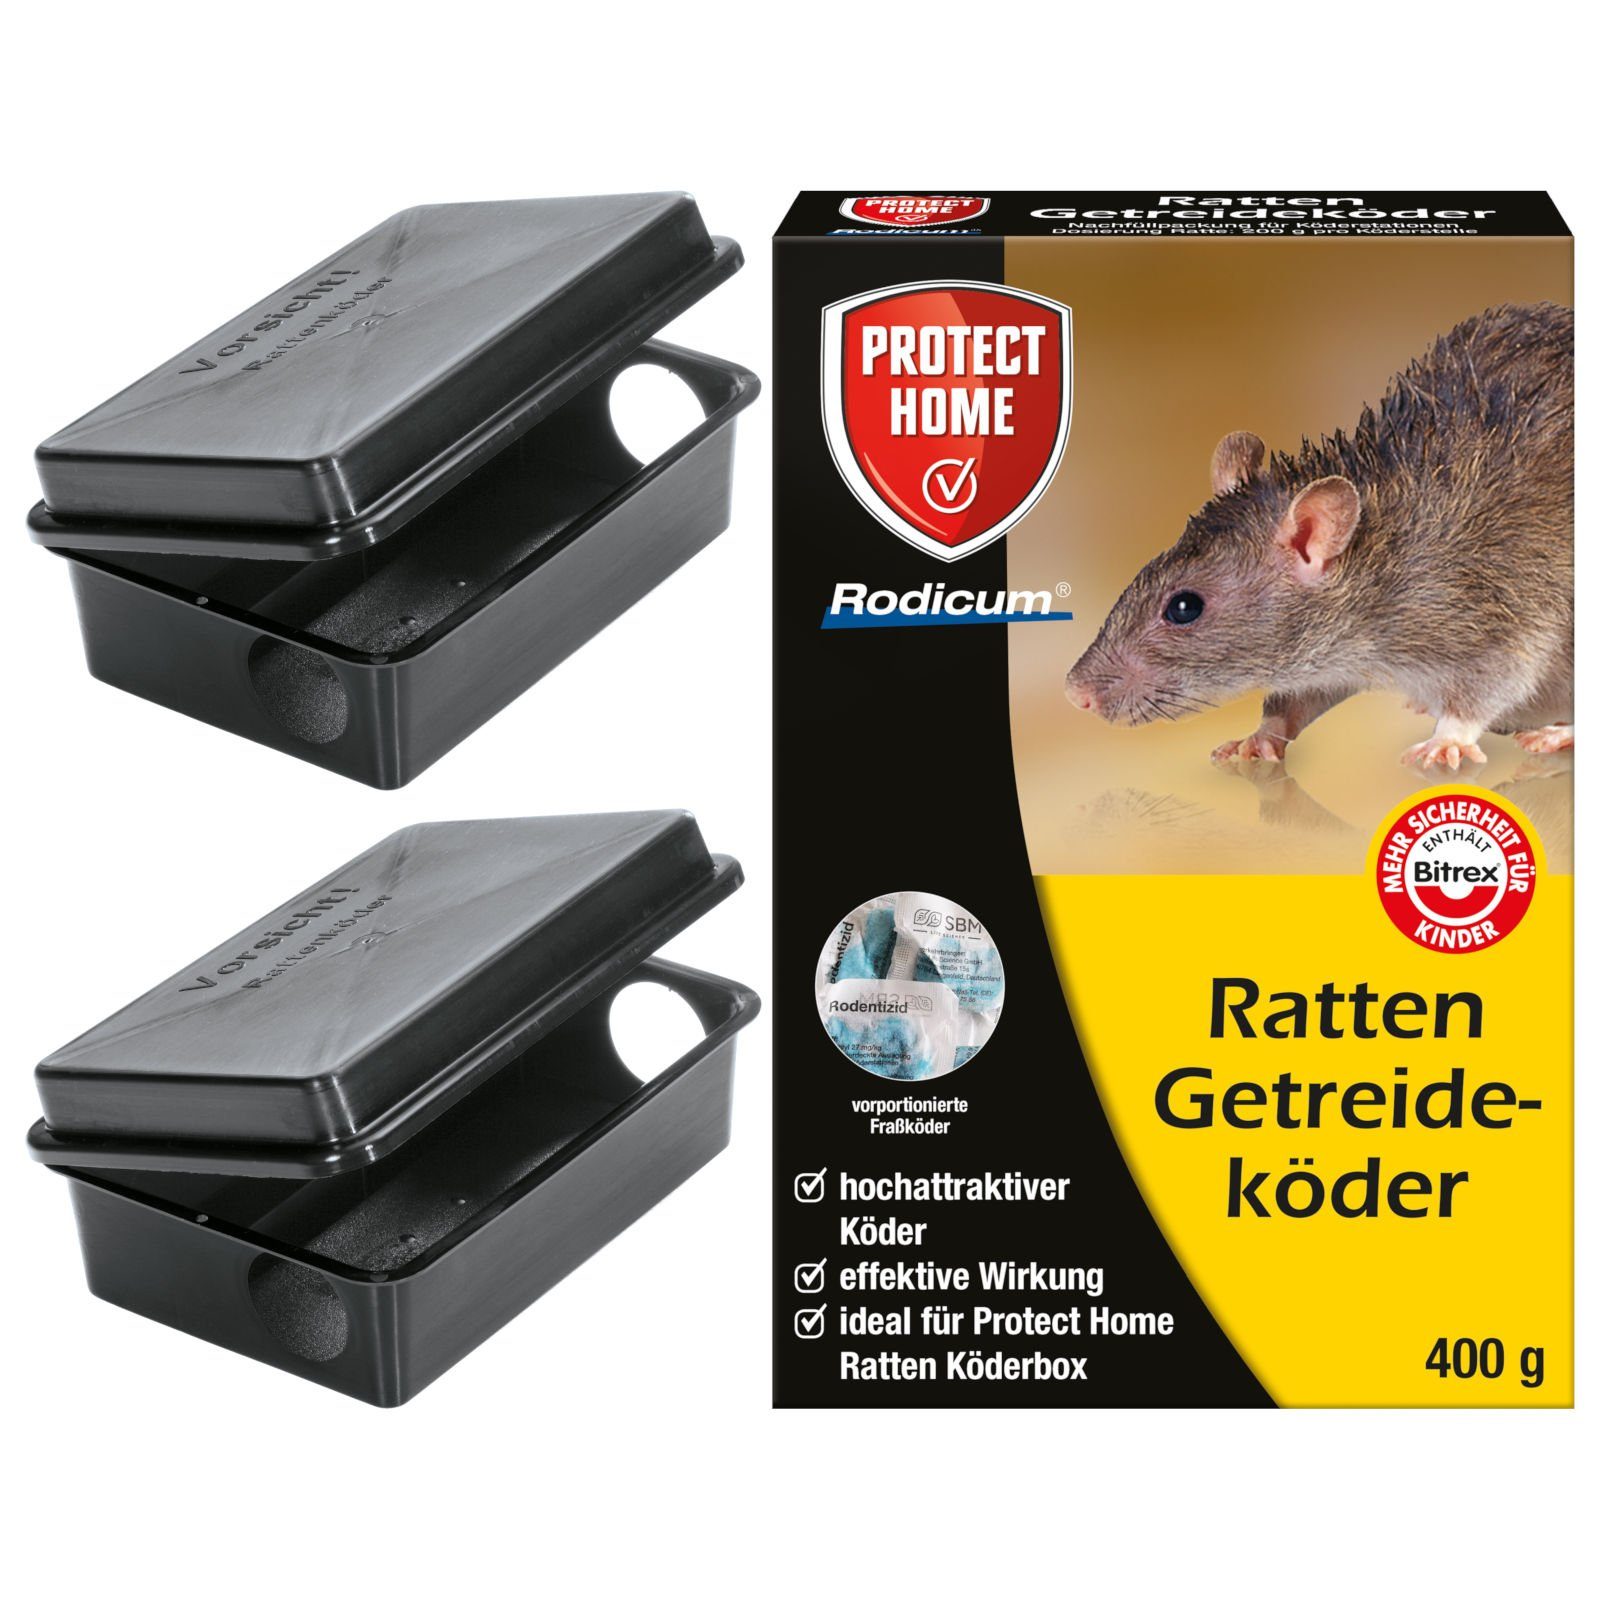 ZGM Gift-Rattenköder Set zur Rattenbekämpfung - 2x Ratten Köderstation + Rodicum Getreidekö